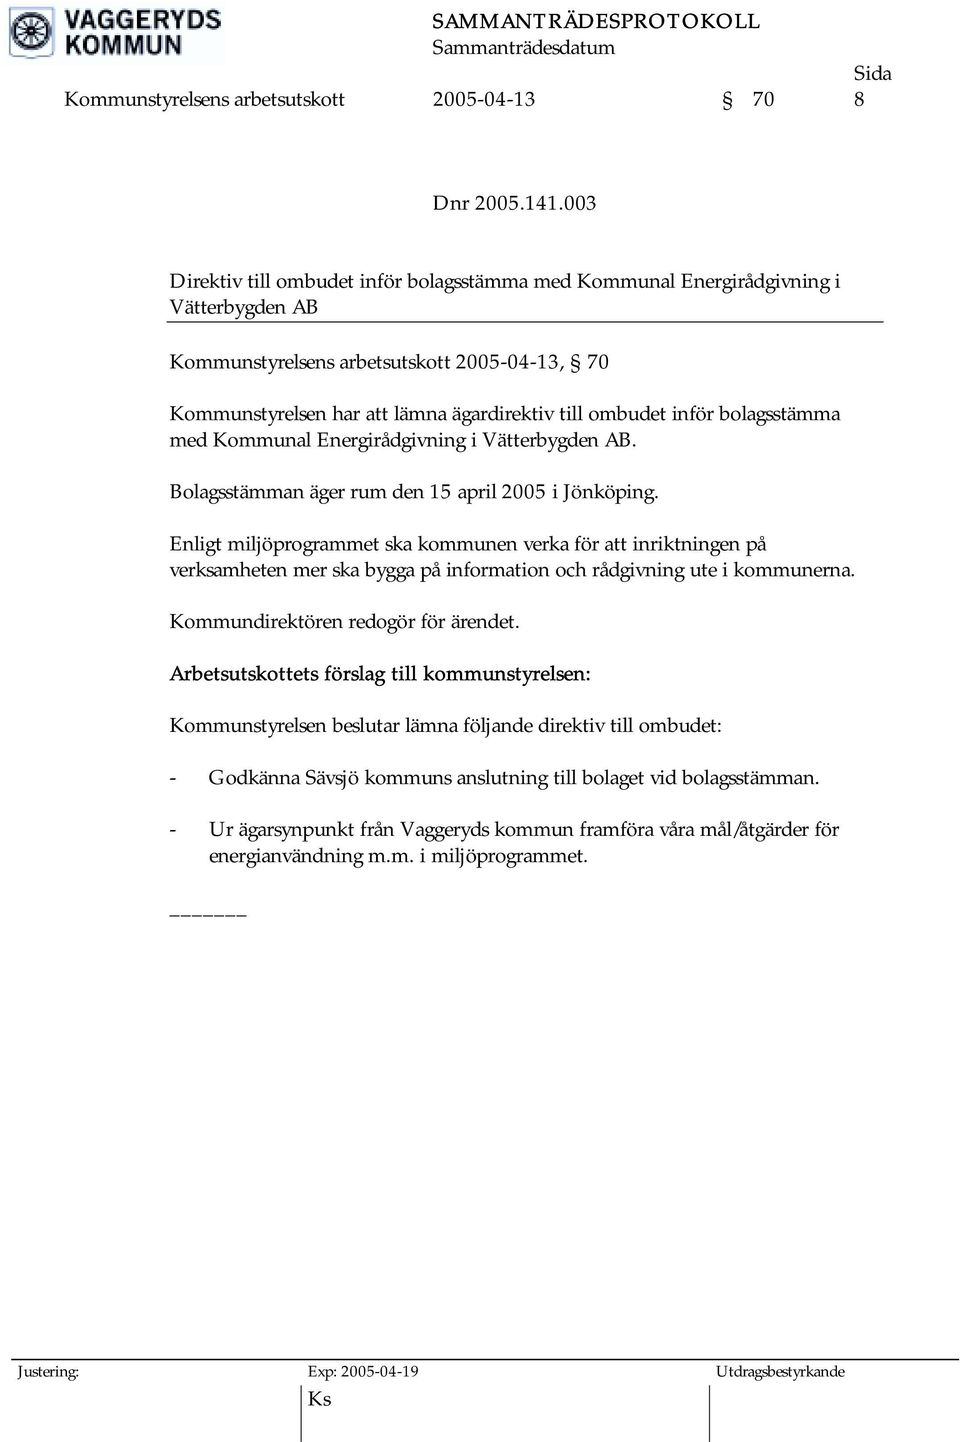 ombudet inför bolagsstämma med Kommunal Energirådgivning i Vätterbygden AB. Bolagsstämman äger rum den 15 april 2005 i Jönköping.